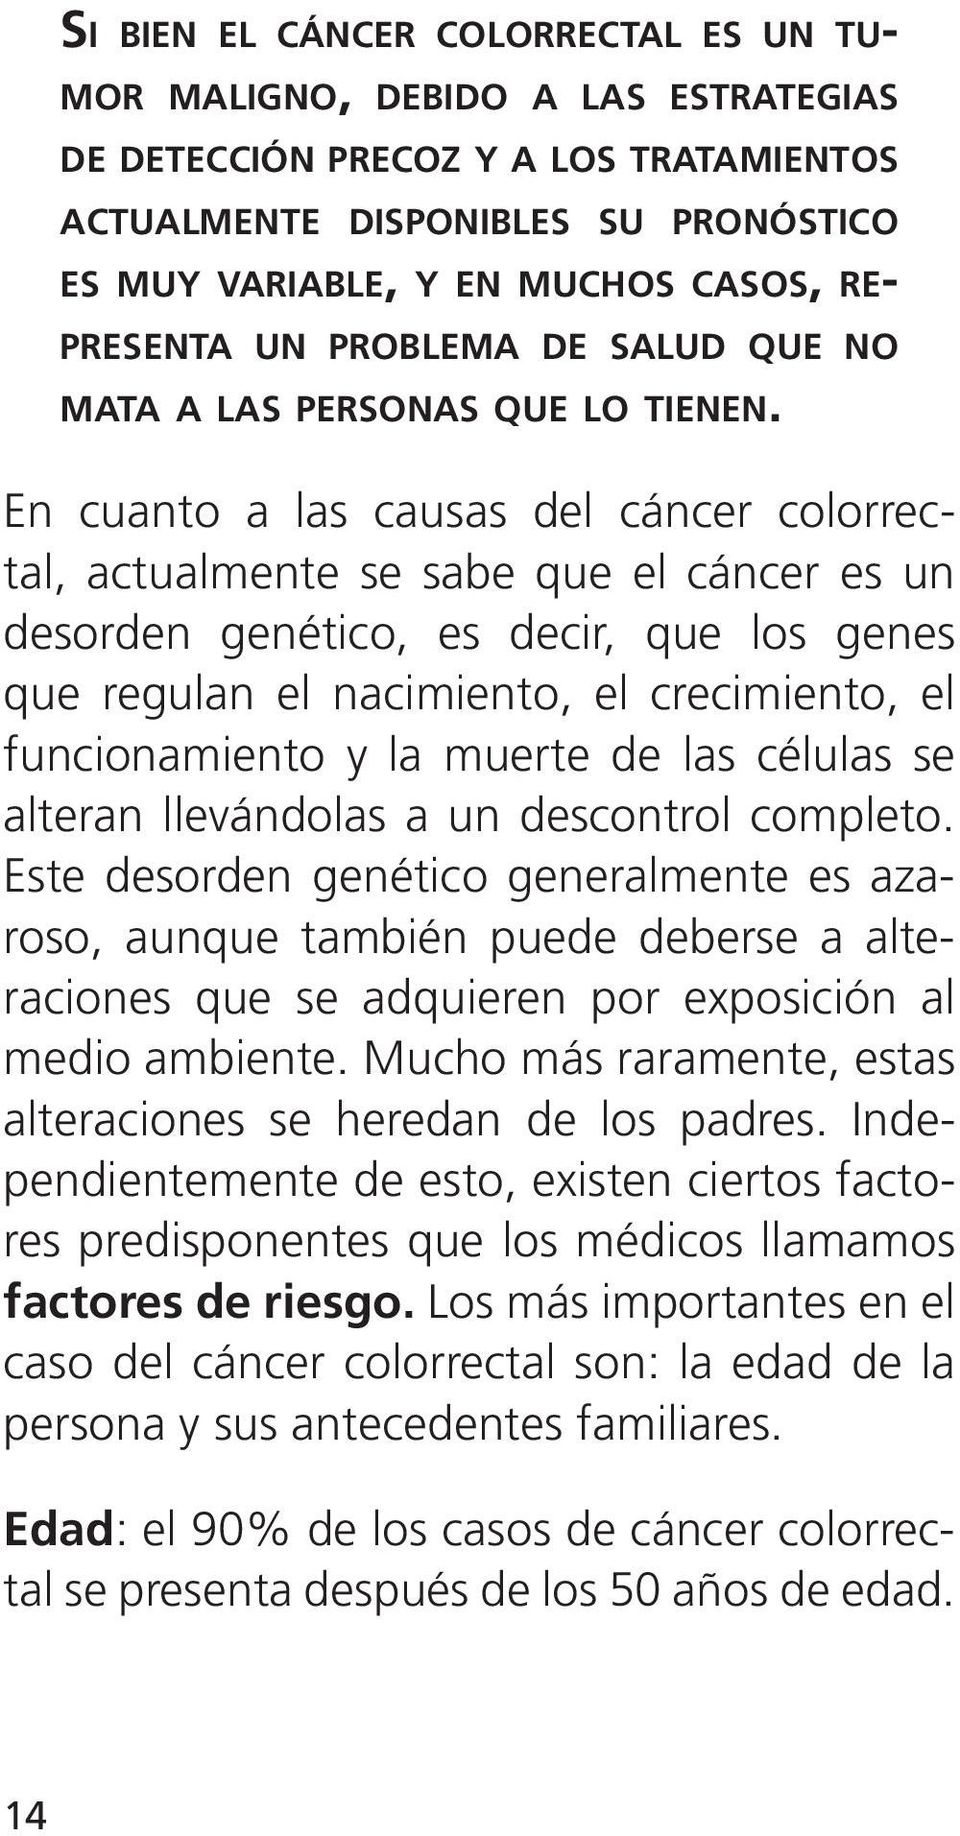 En cuanto a las causas del cáncer colorrectal, actualmente se sabe que el cáncer es un desorden genético, es decir, que los genes que regulan el nacimiento, el crecimiento, el funcionamiento y la